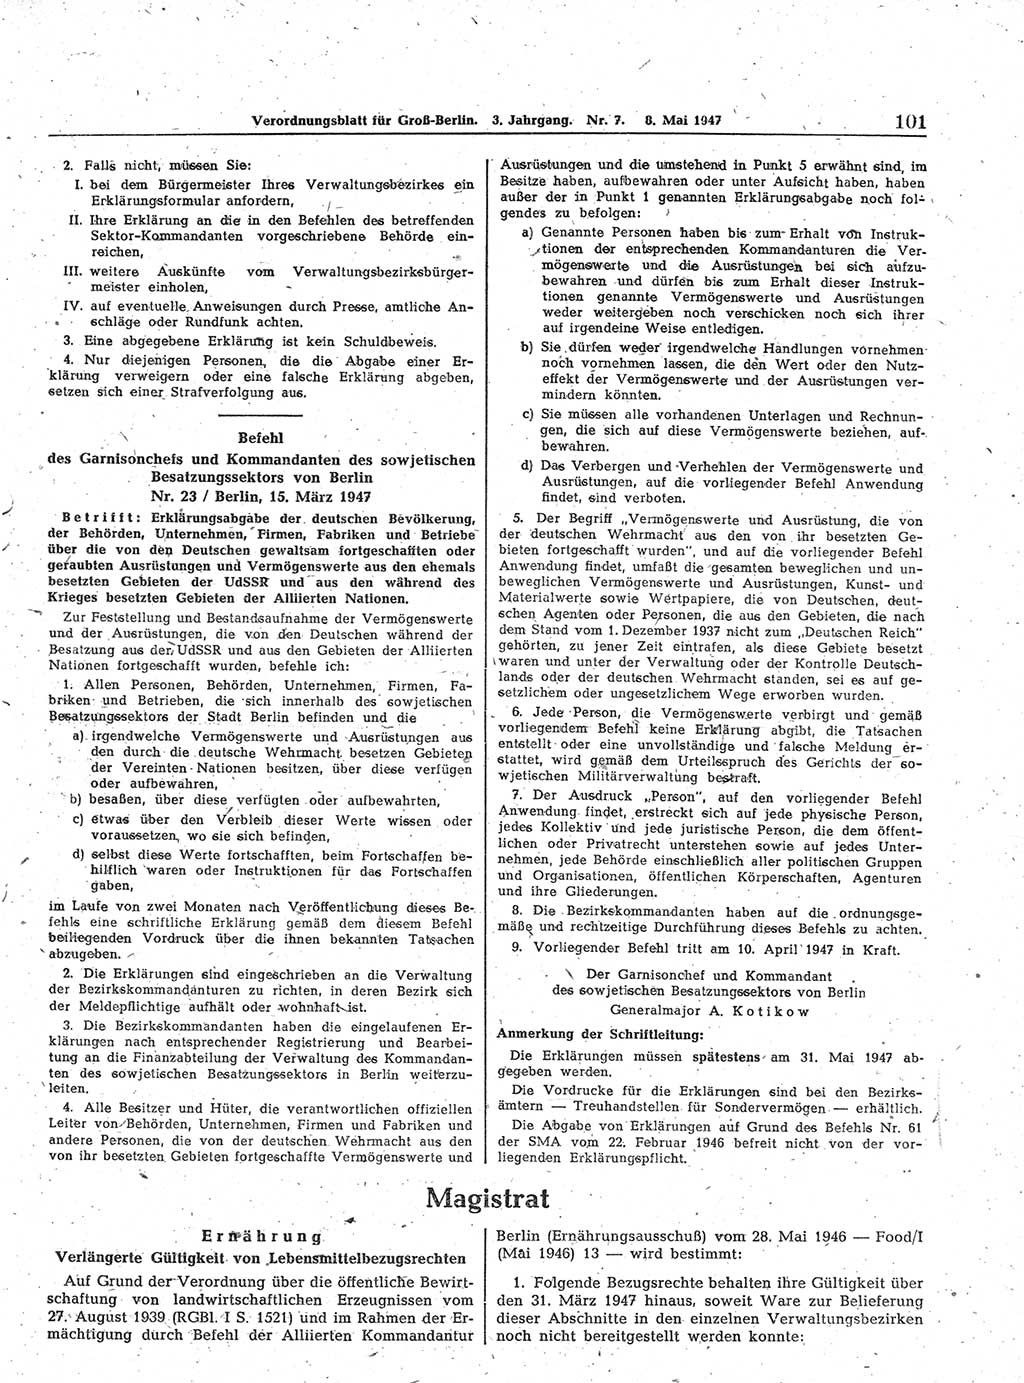 Verordnungsblatt (VOBl.) für Groß-Berlin 1947, Seite 101 (VOBl. Bln. 1947, S. 101)